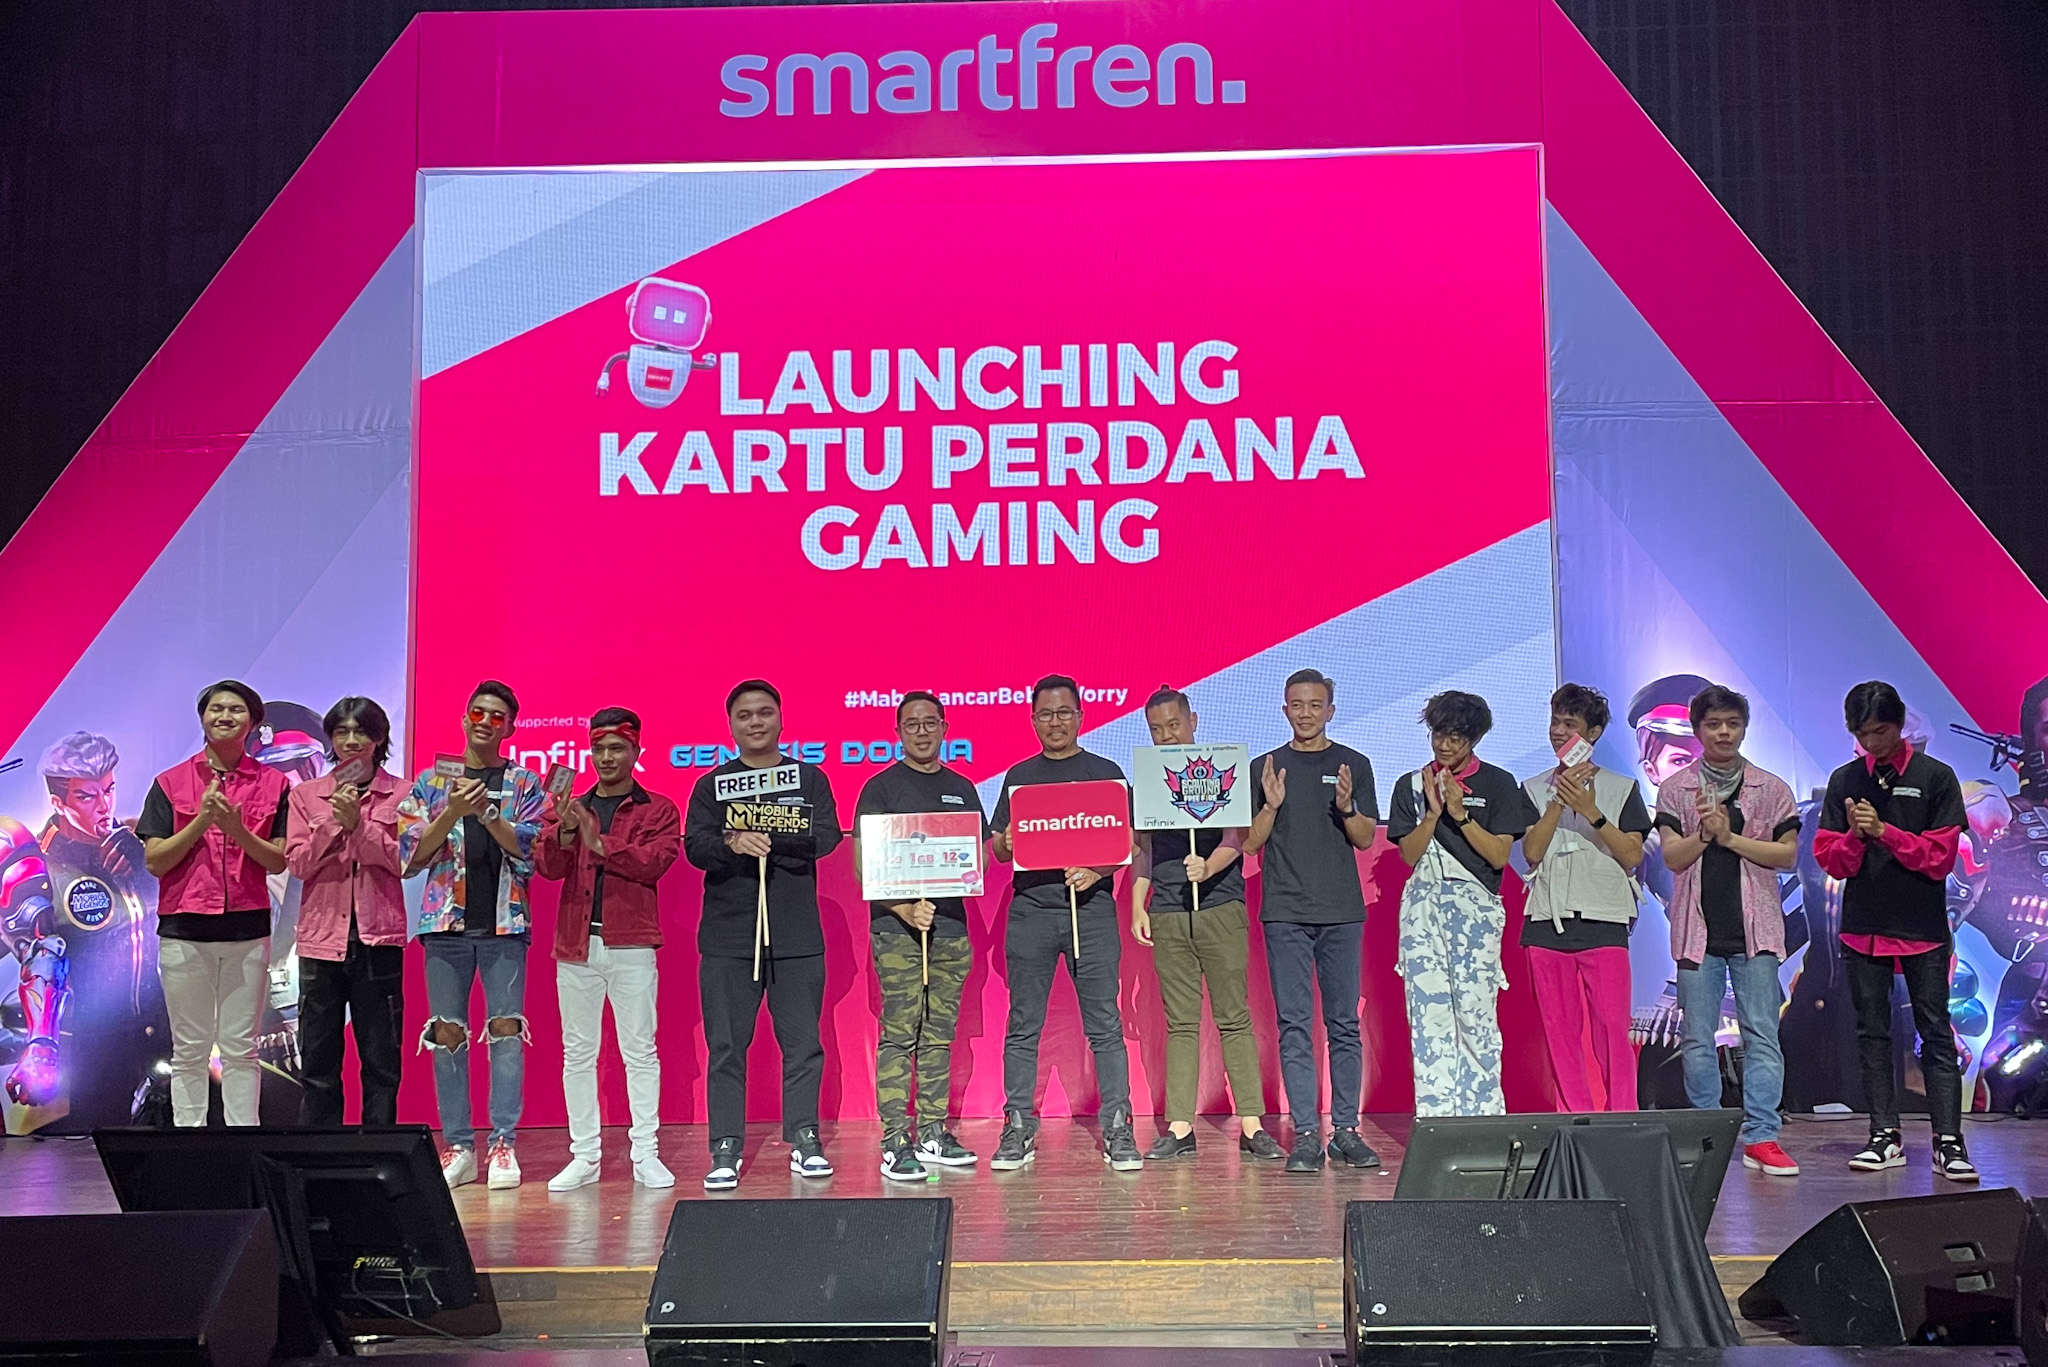 Dukung Pengembangan Esports Indonesia, Smartfren Luncurkan Kartu Perdana Gaming Bersama Genesis Dogma dan Infi